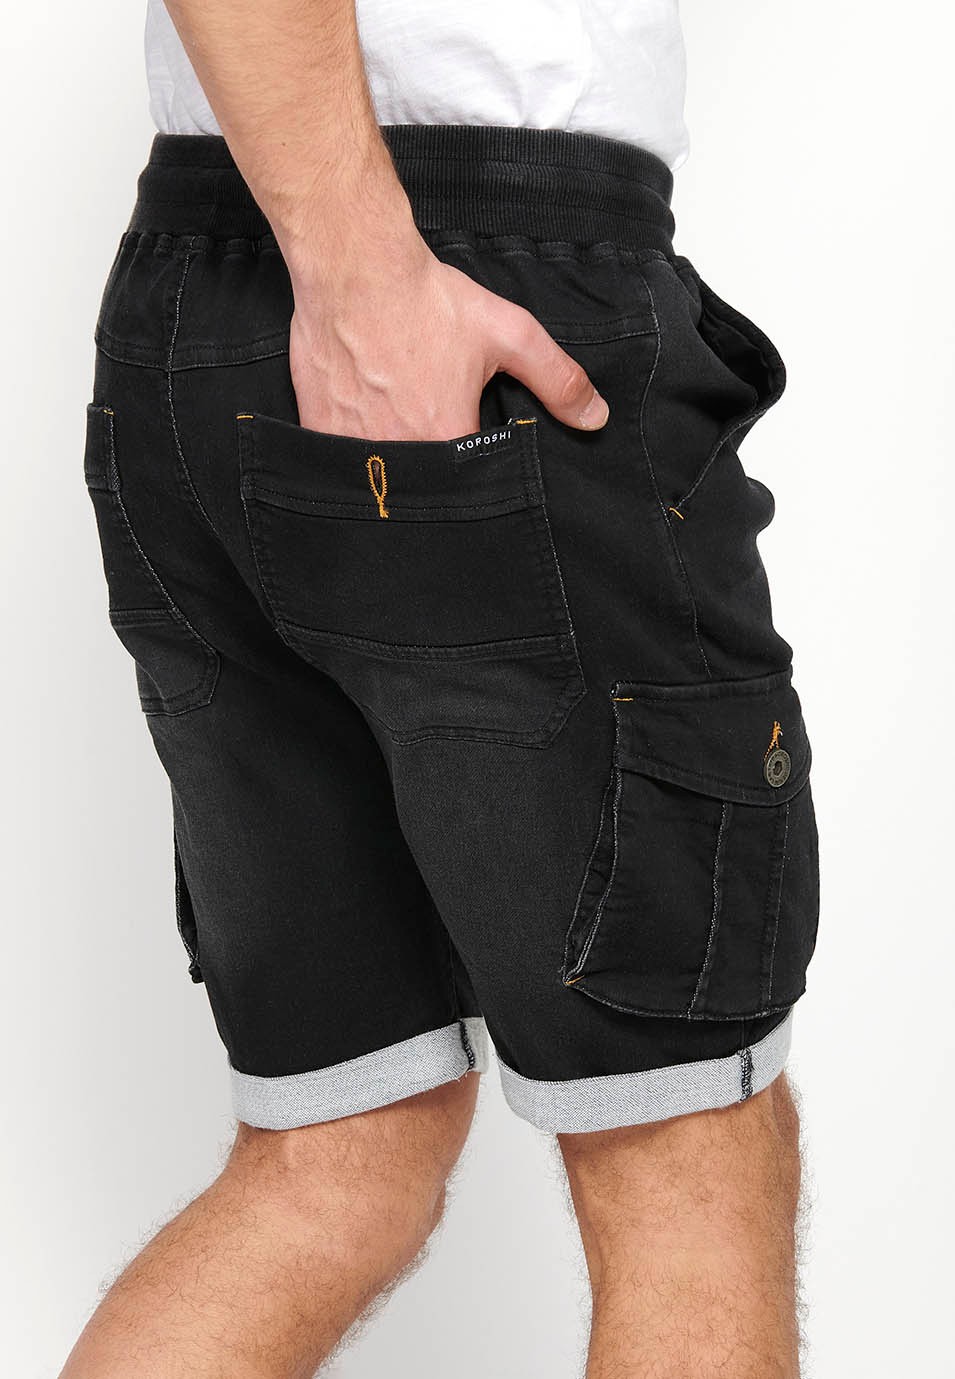 Pantalons curts jogger denim bermuda càrrec acabat en volta de Cintura ajustable amb goma i cordó de Butxaques laterals amb solapa de Color Negre per a Home 7